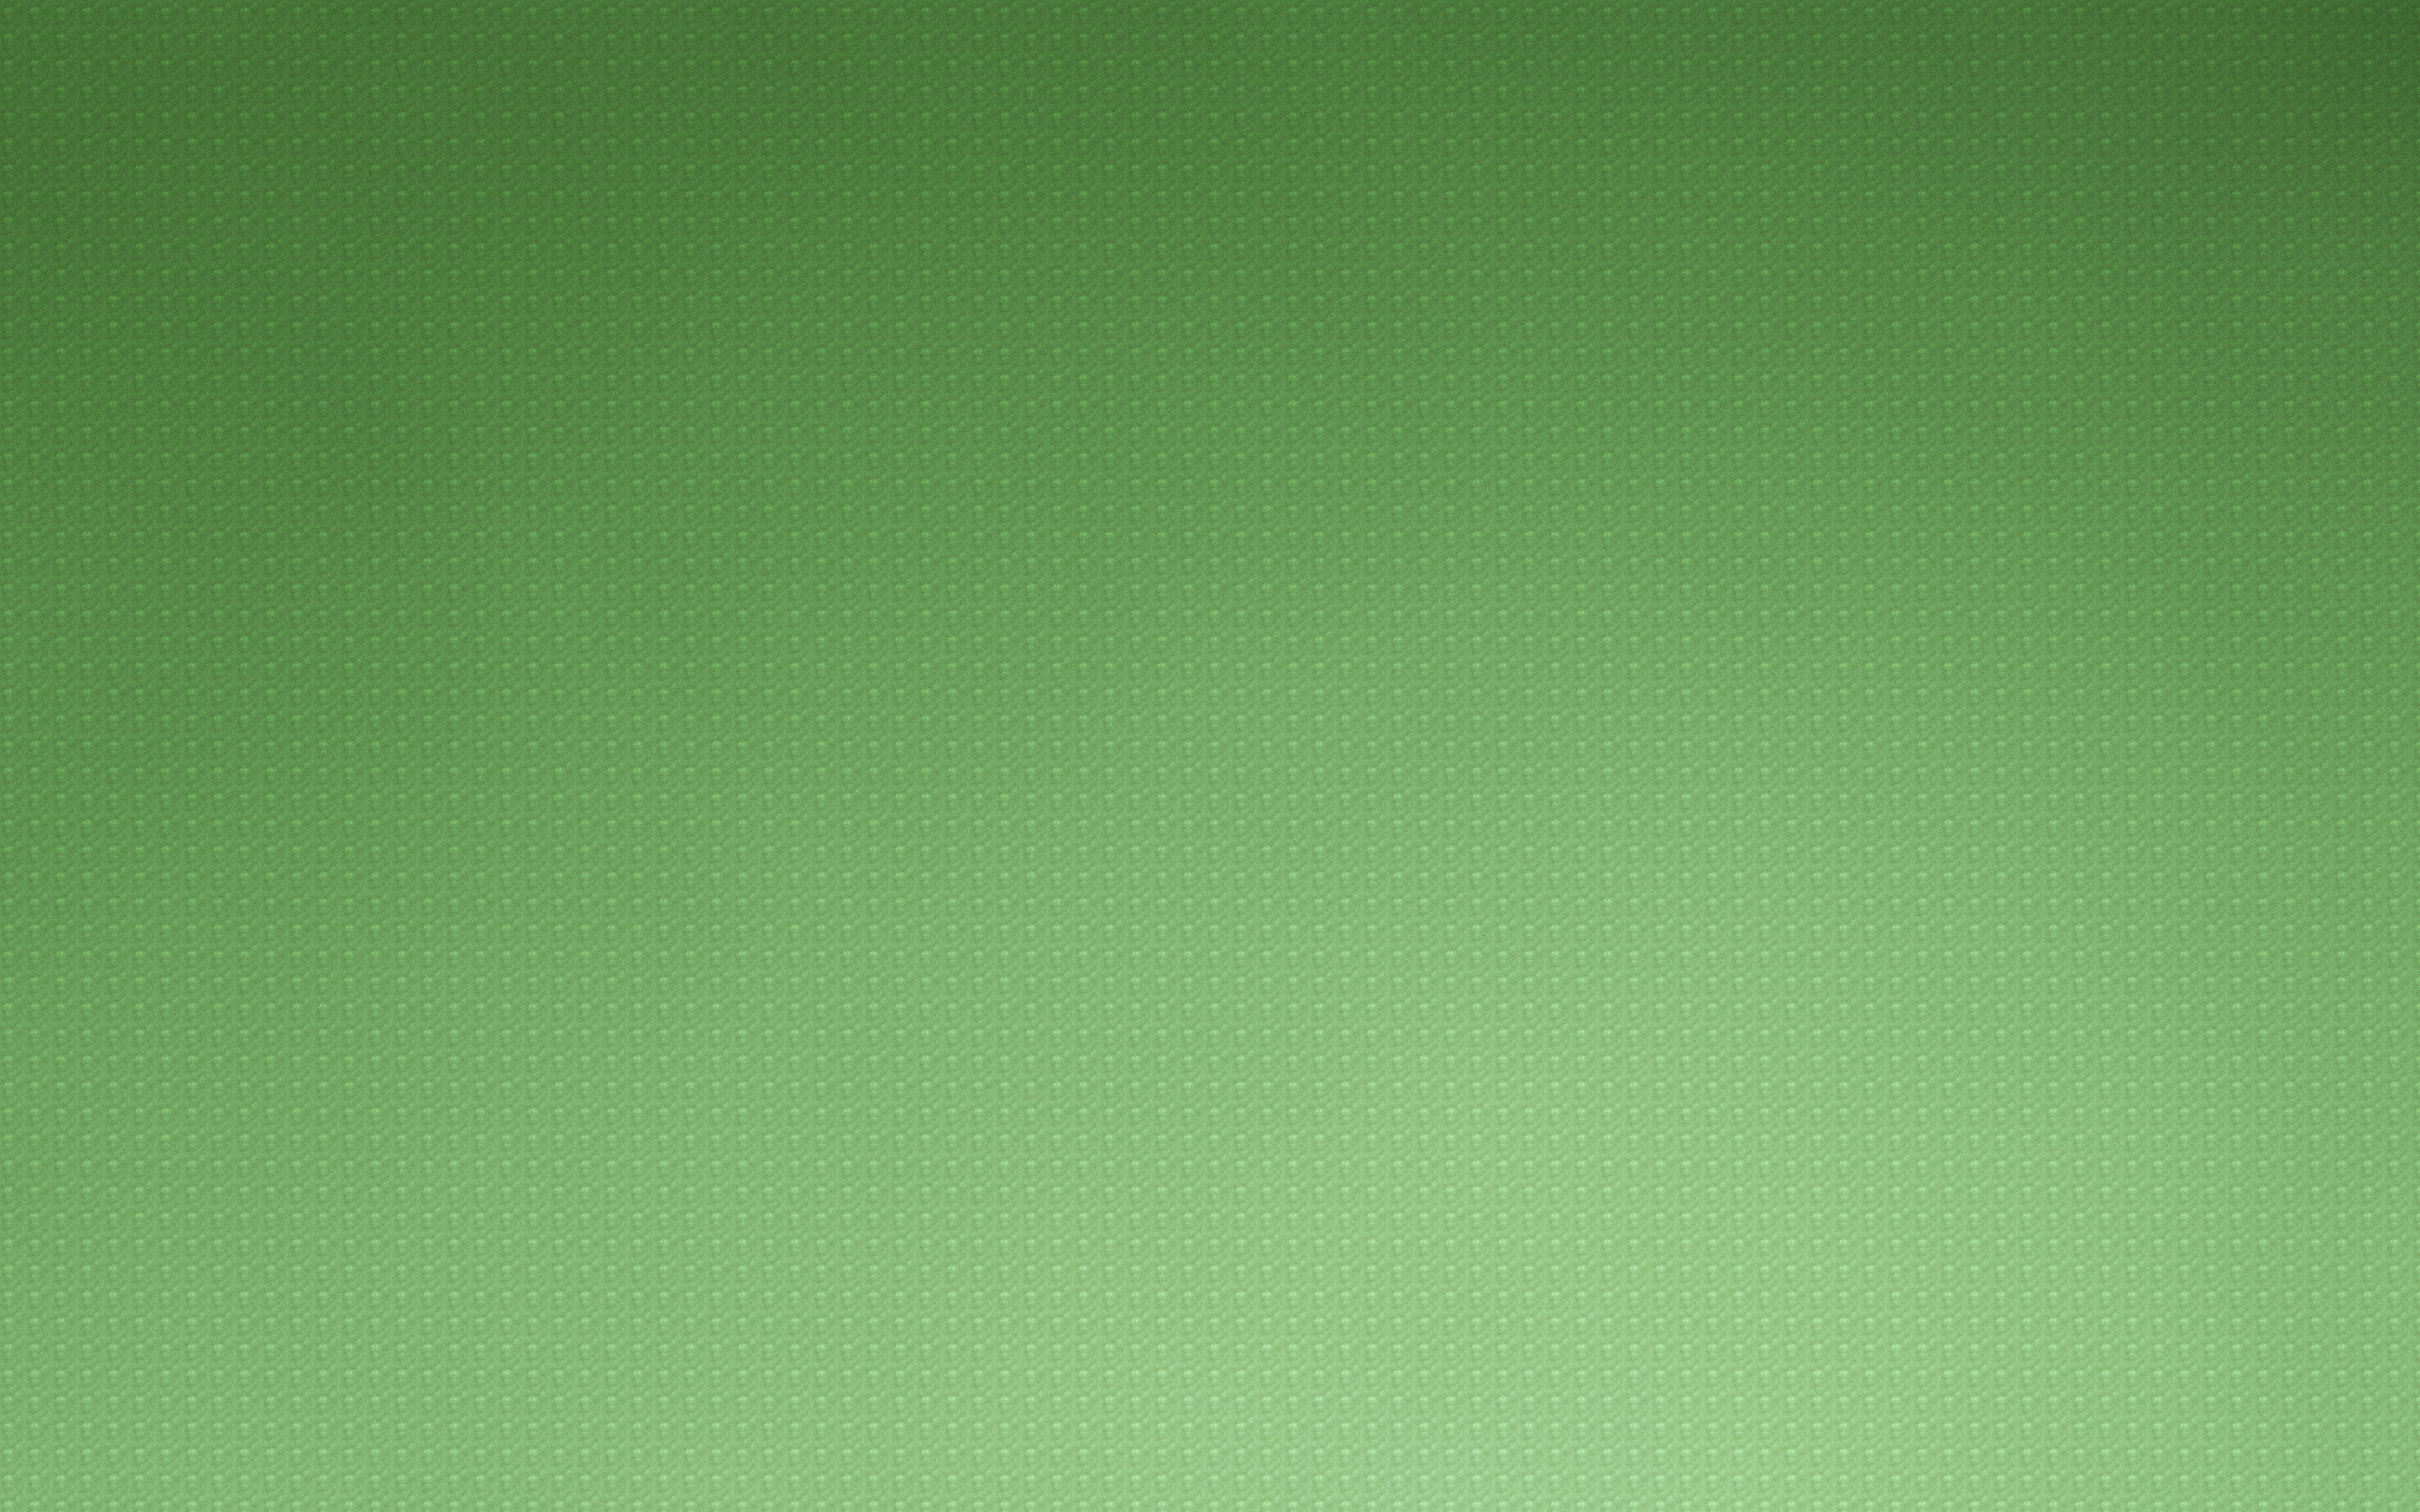 پس زمینه بافت سبز کم رنگ و روشن ویژه عکس زمینه کامپیوتر